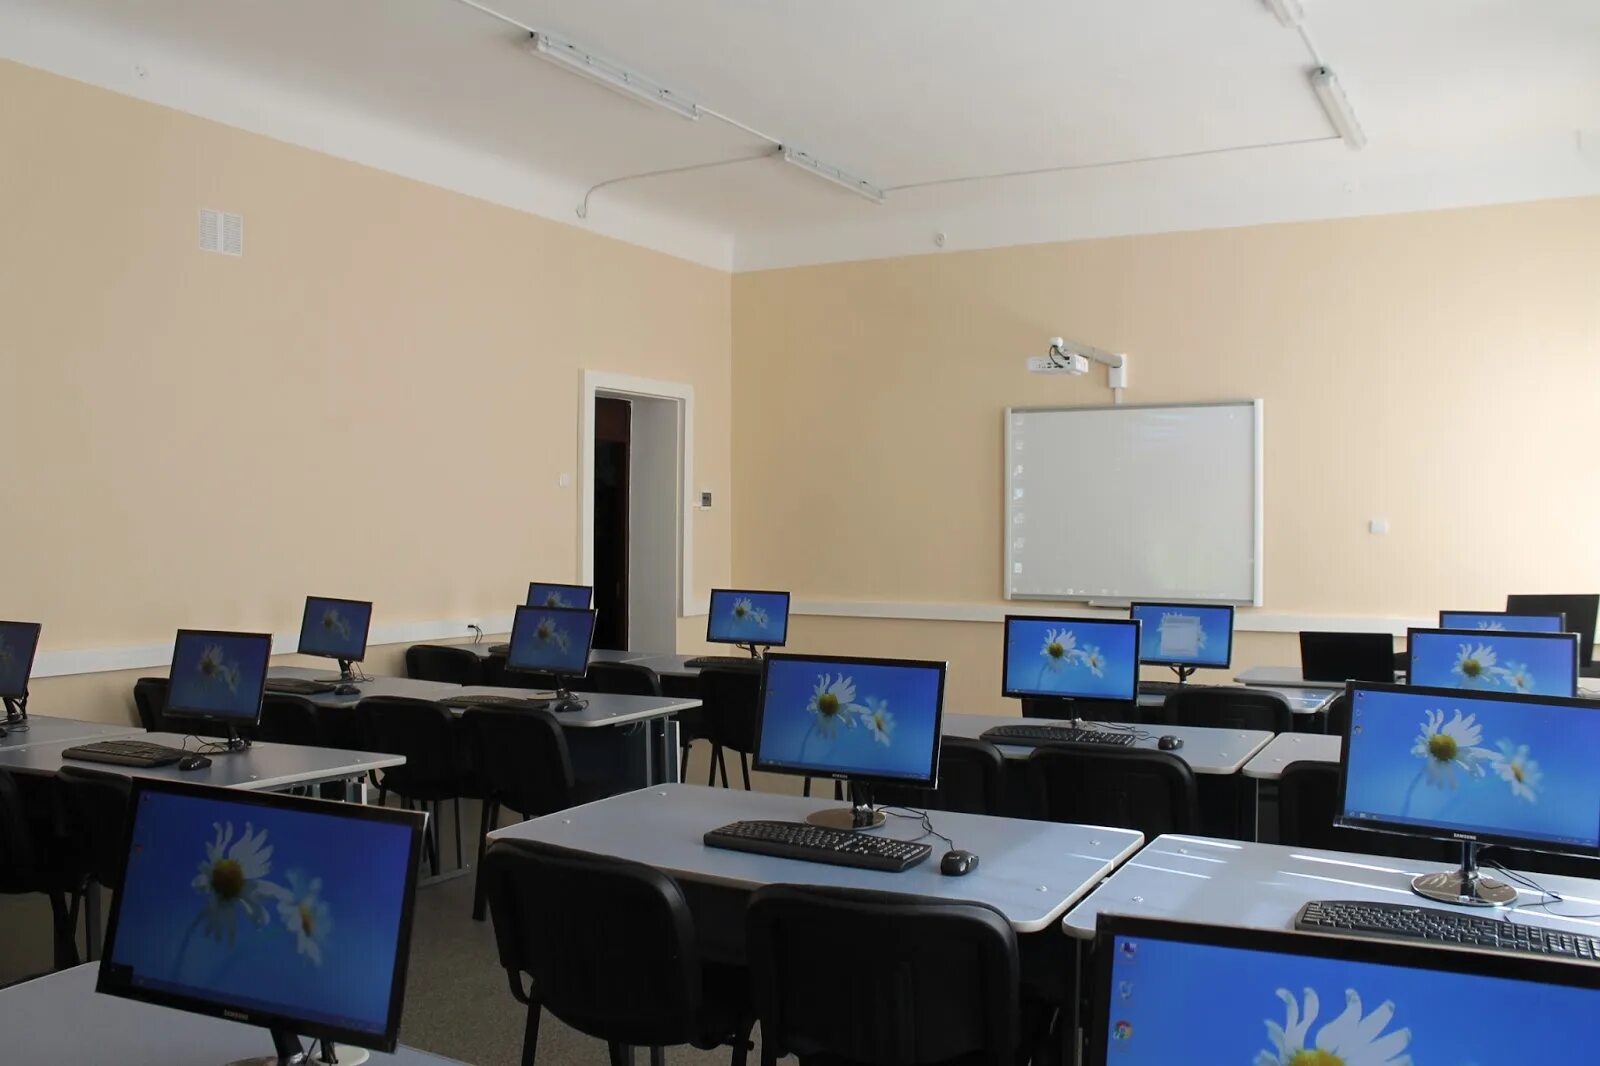 В классе установили новый компьютер. Компьютерный зал в школе. Компьютерный класс. Компьютер в школе. Кабинет информатики в школе.